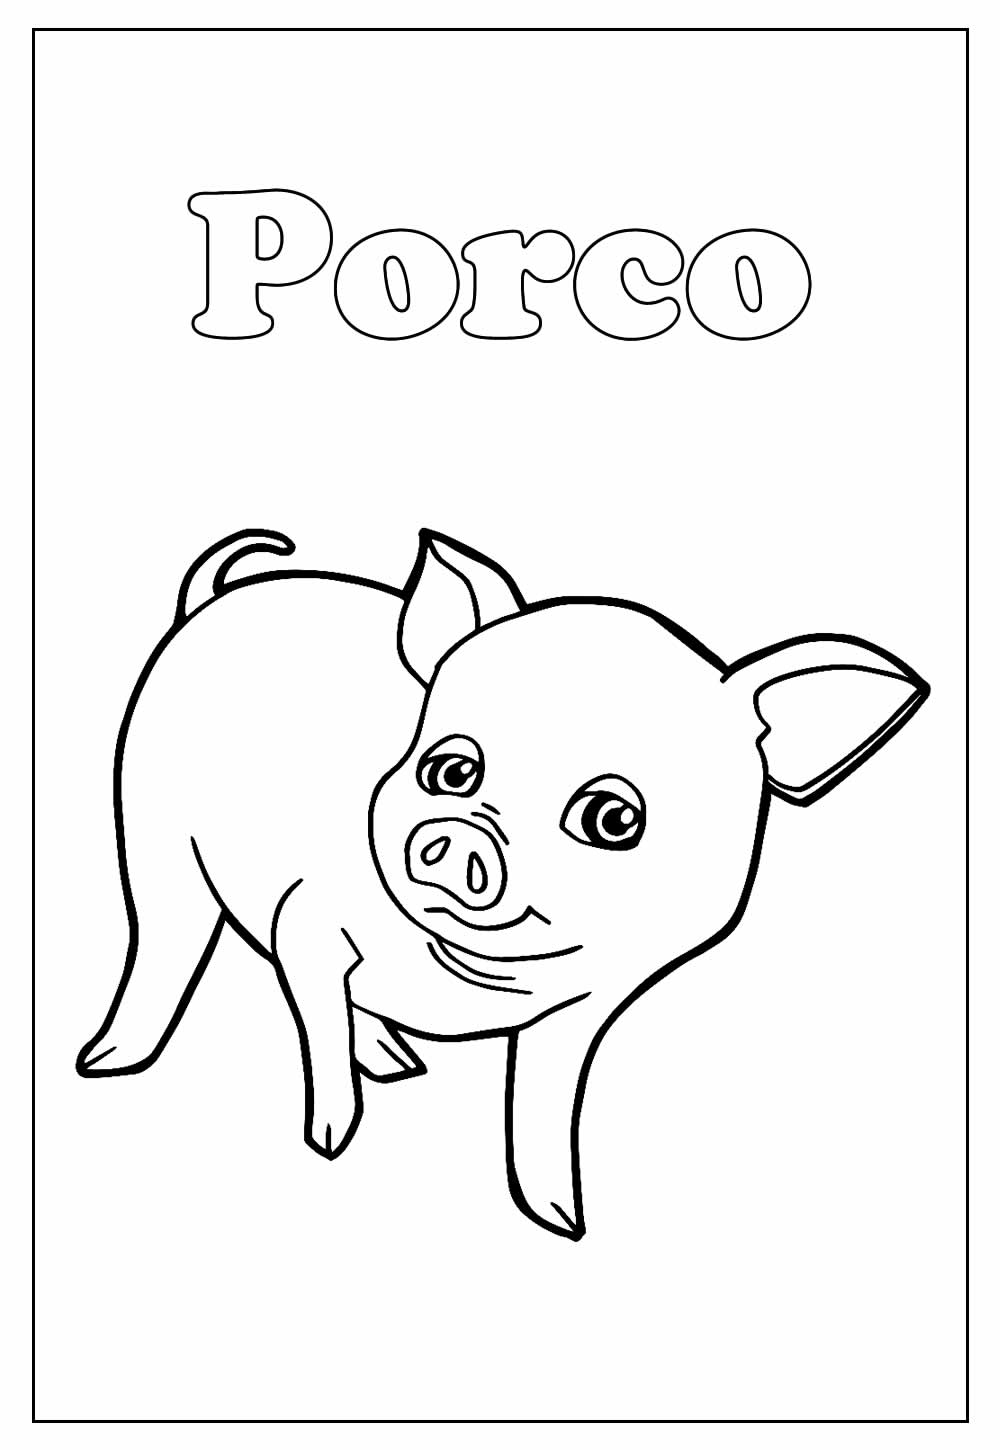 Desenho Educativo de Porco para colorir